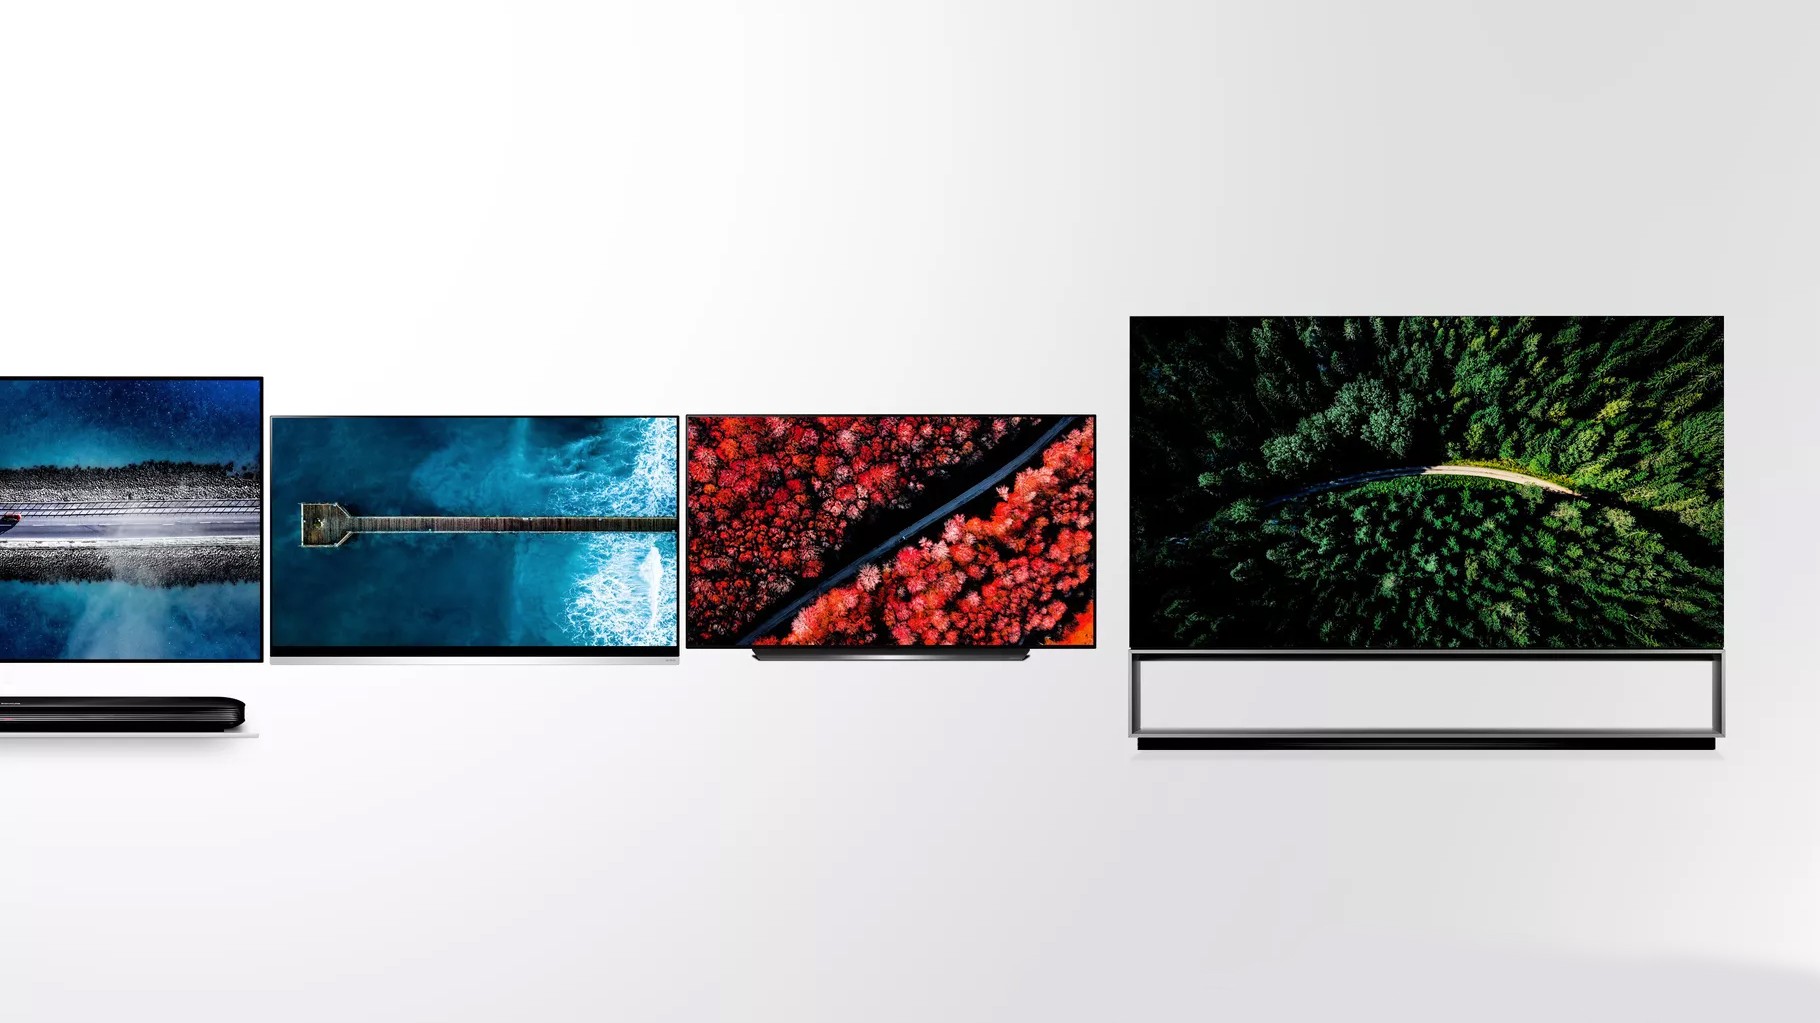 LG добавит поддержку AirPlay 2 во все телевизоры 2019 года